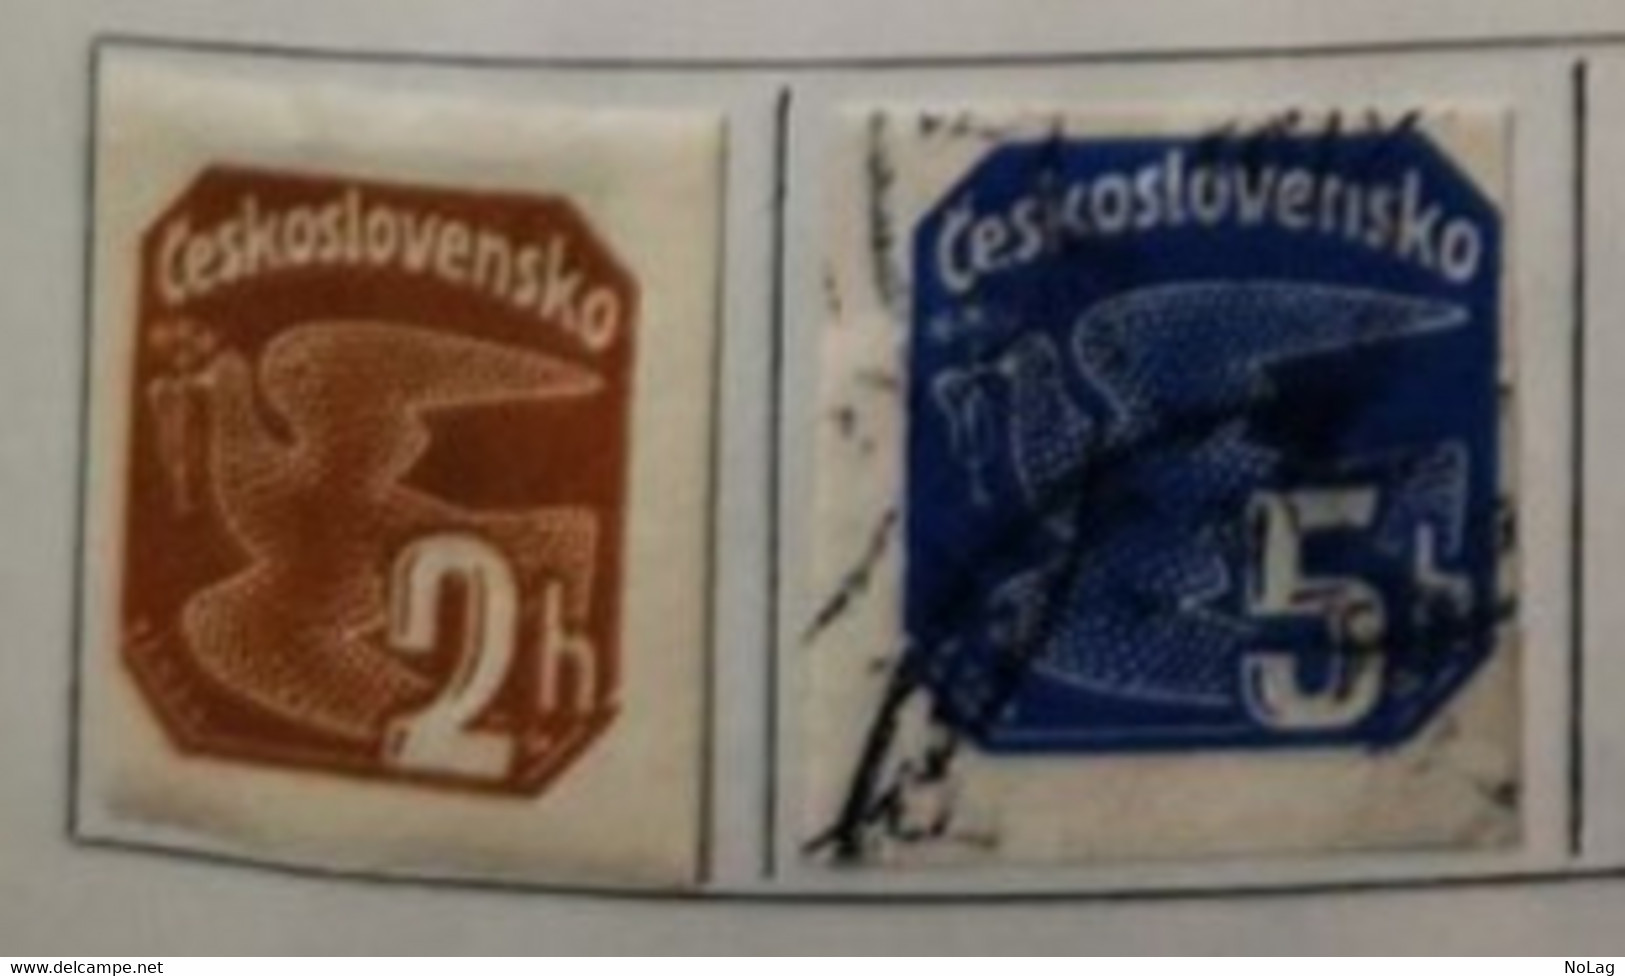 Tchécoslovaquie - 1937/66 _ Lot varié de 10 timbres _ Y&T N°1-2-4-5-7-8-9-14-17-18 0/